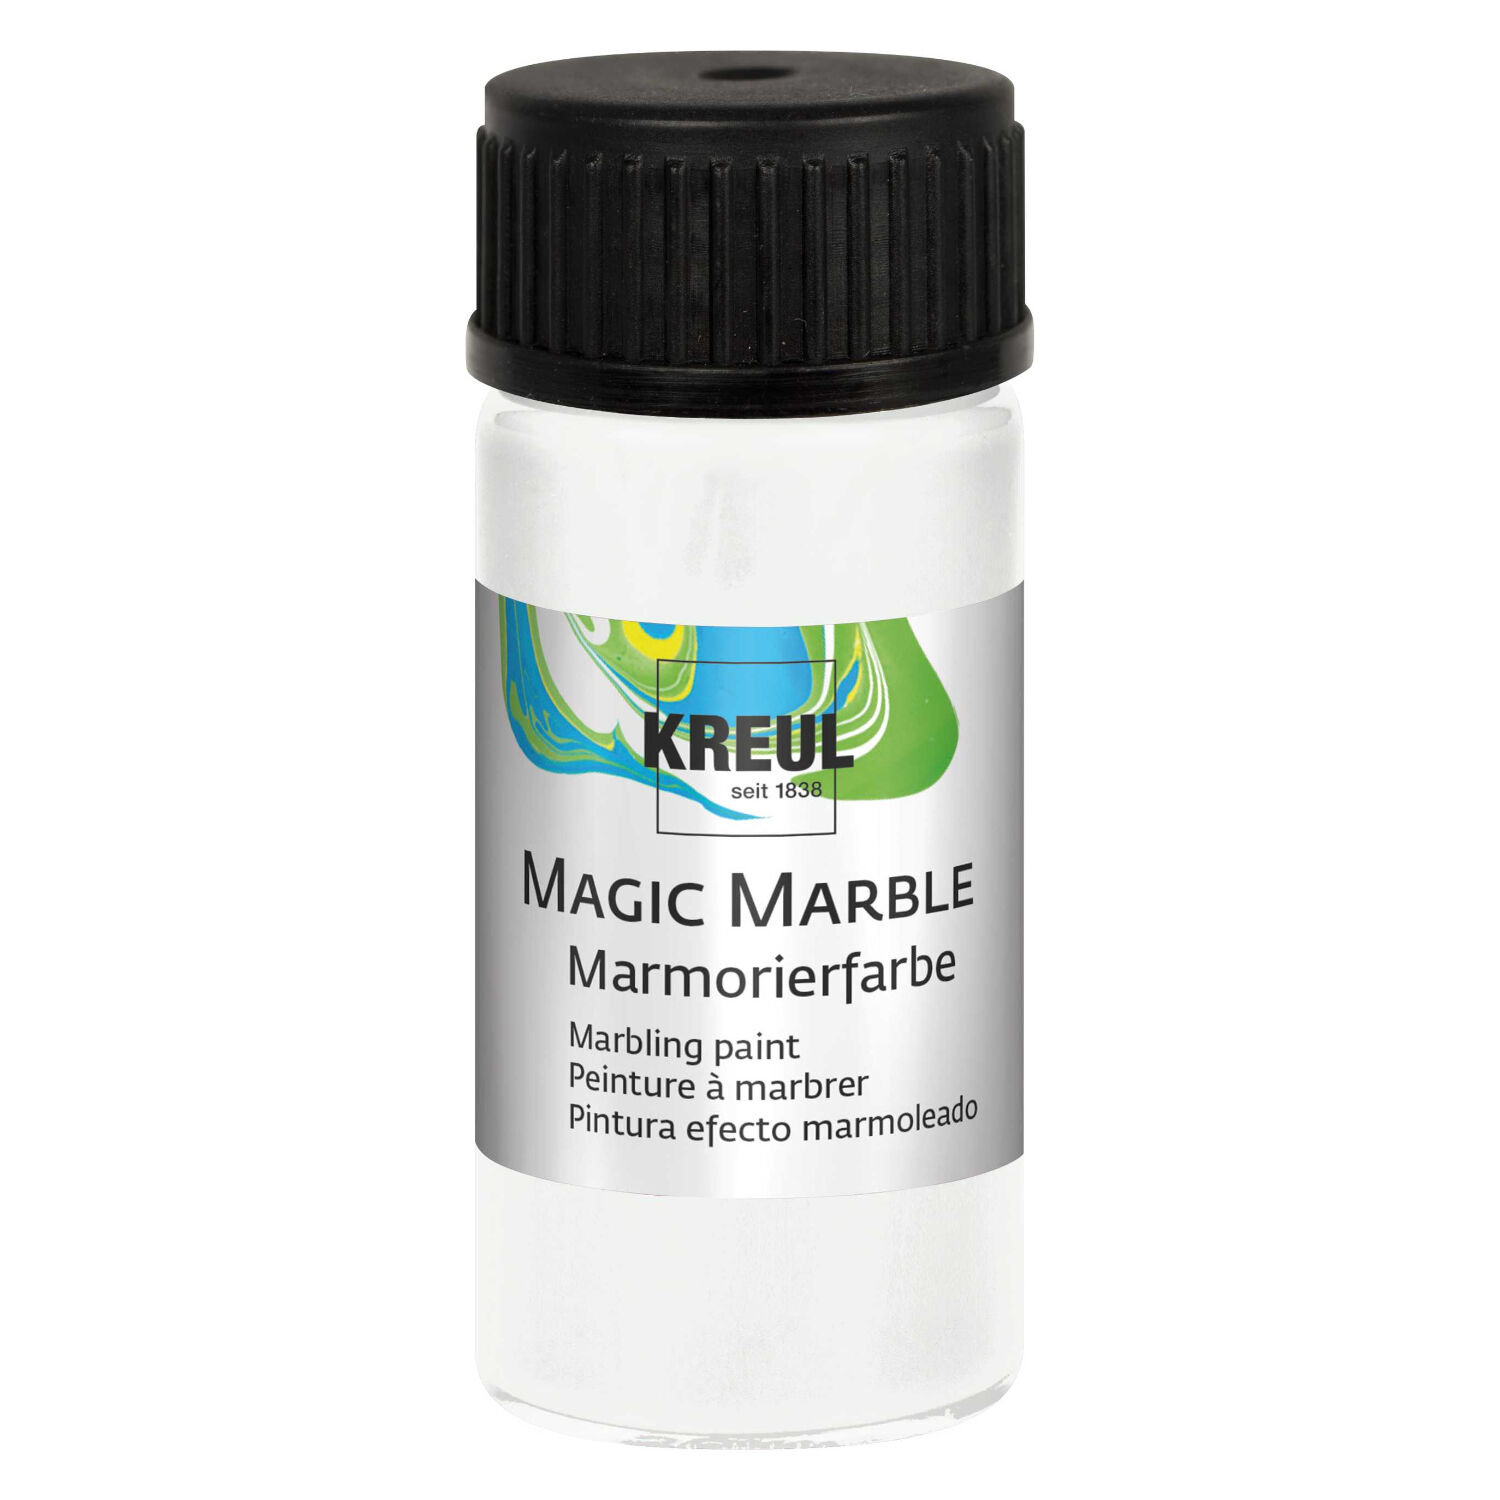 Magic Marble Marmorierfarbe, Weiß, 20ml